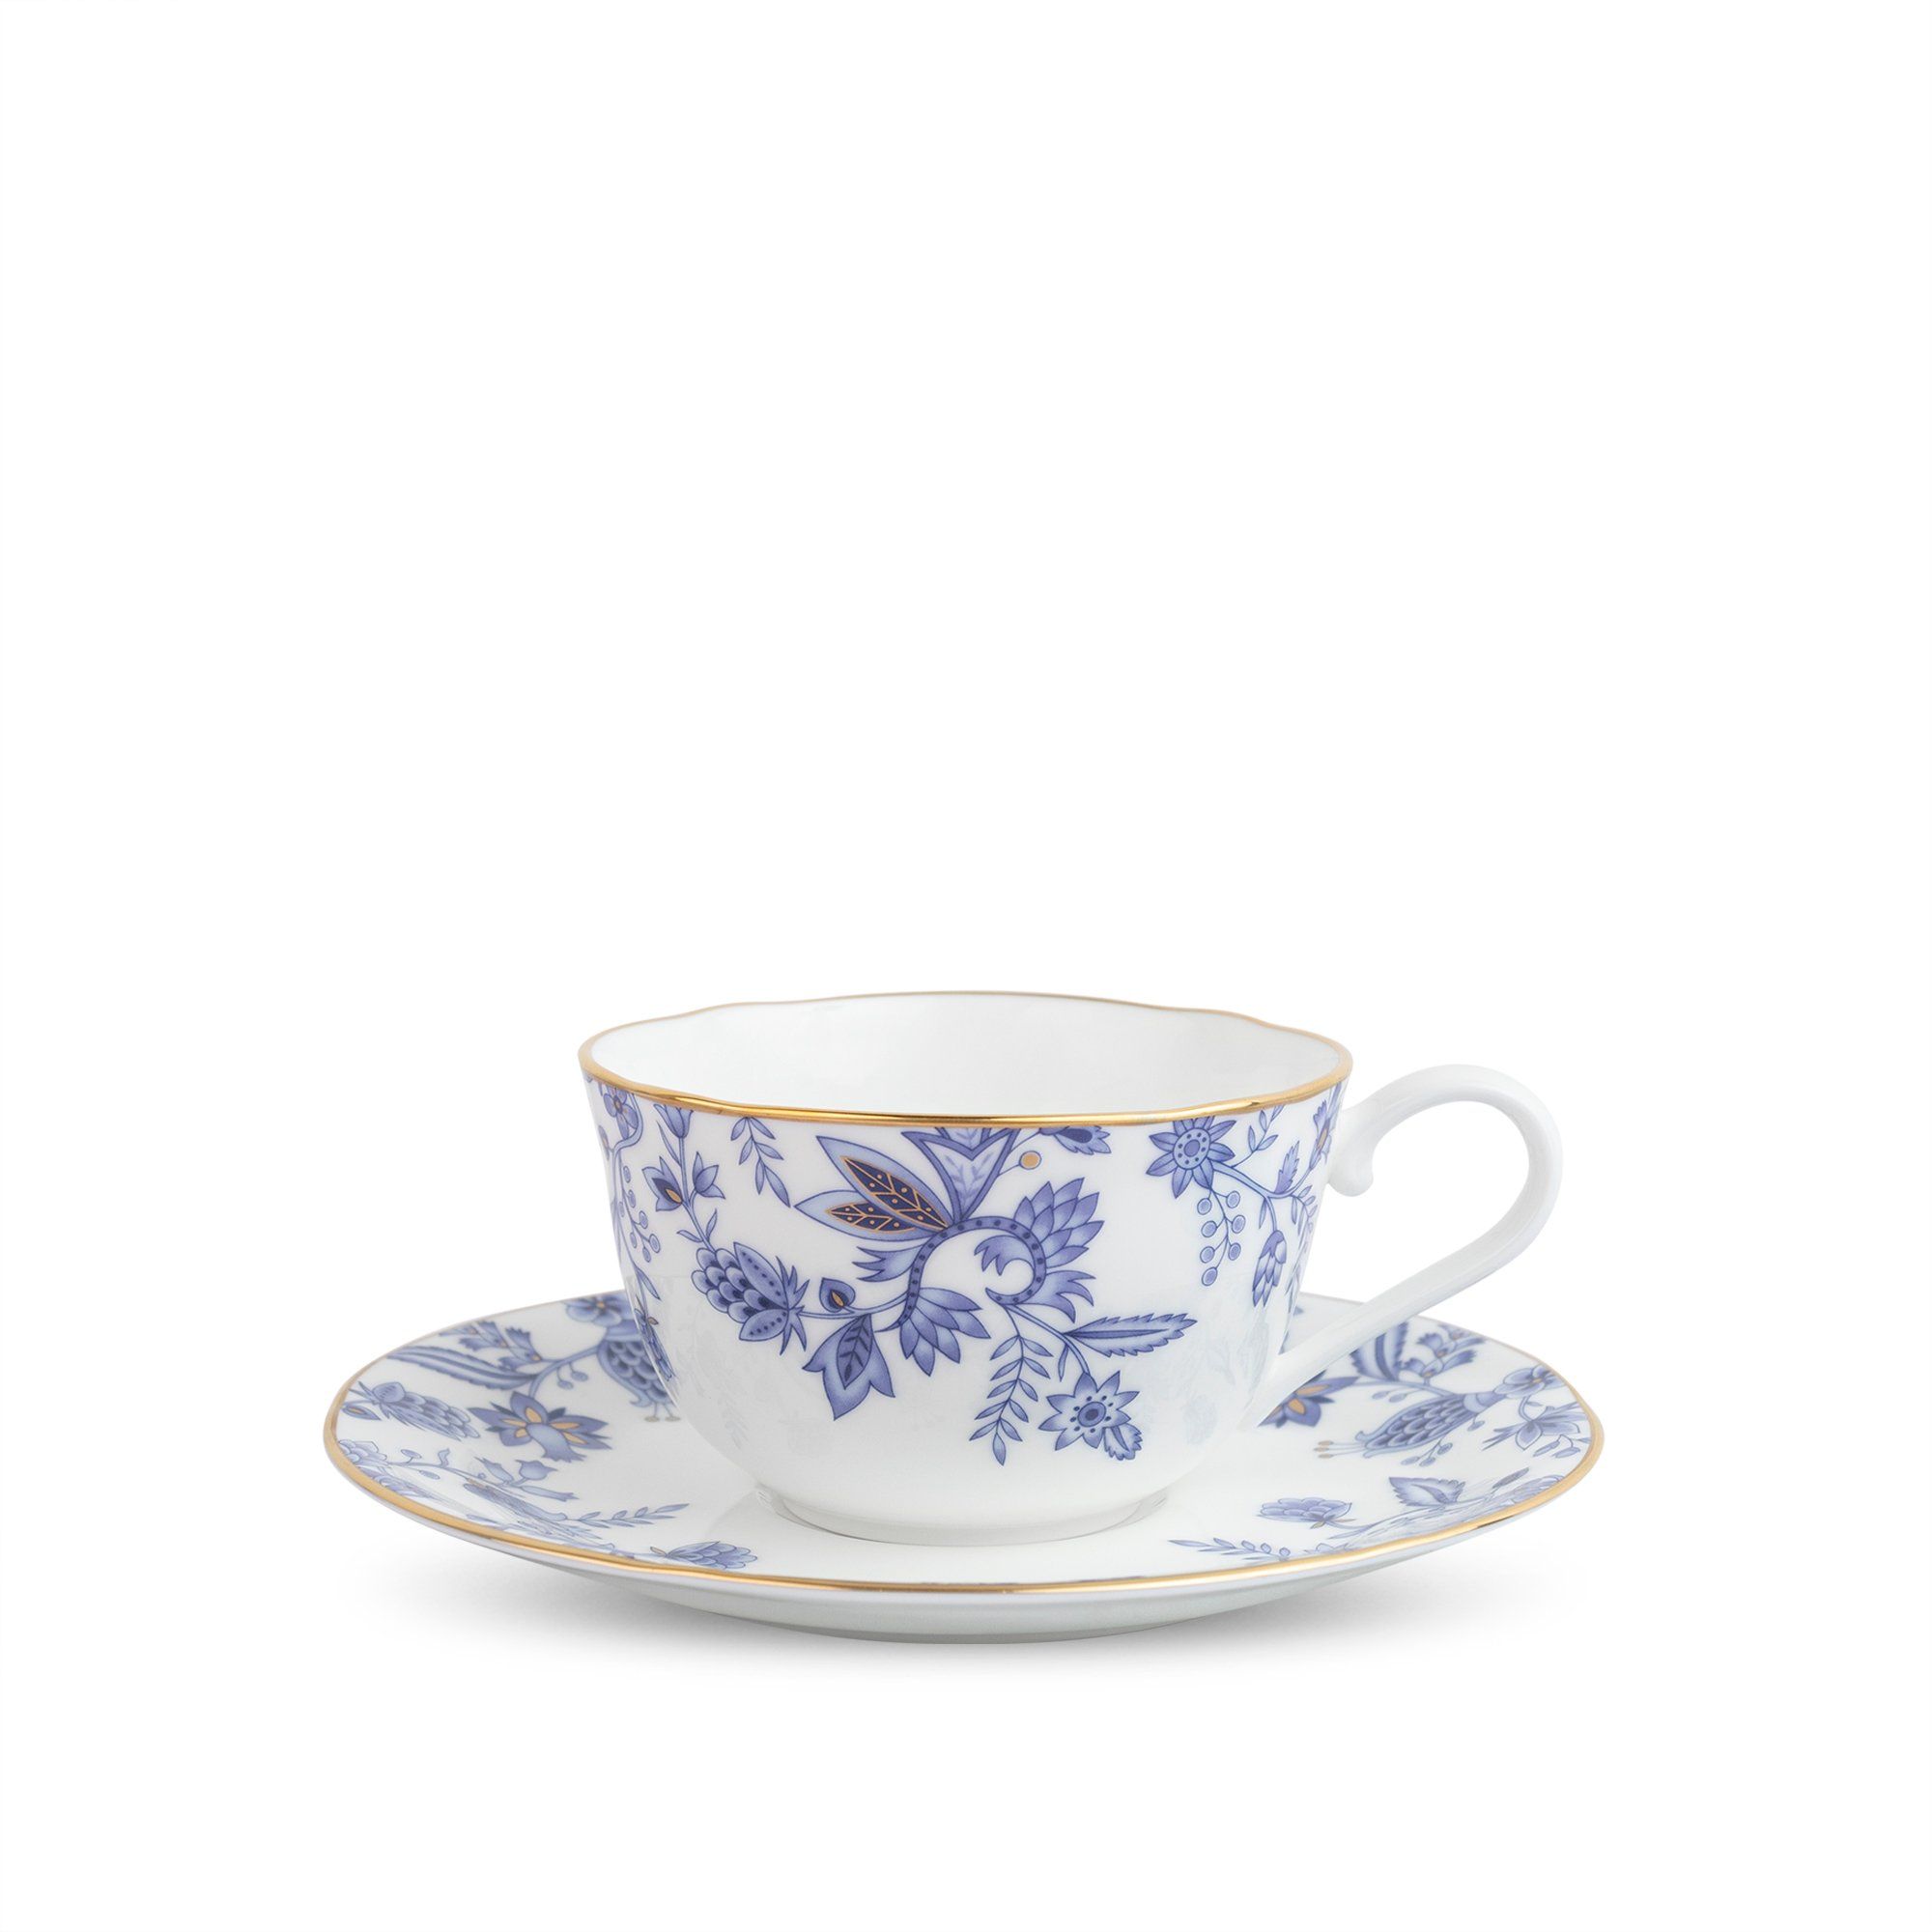  Chén trà (tách trà) kèm đĩa lót dung tích 220ml sứ xương | Blue Sorrentino 4562L-T59387A 